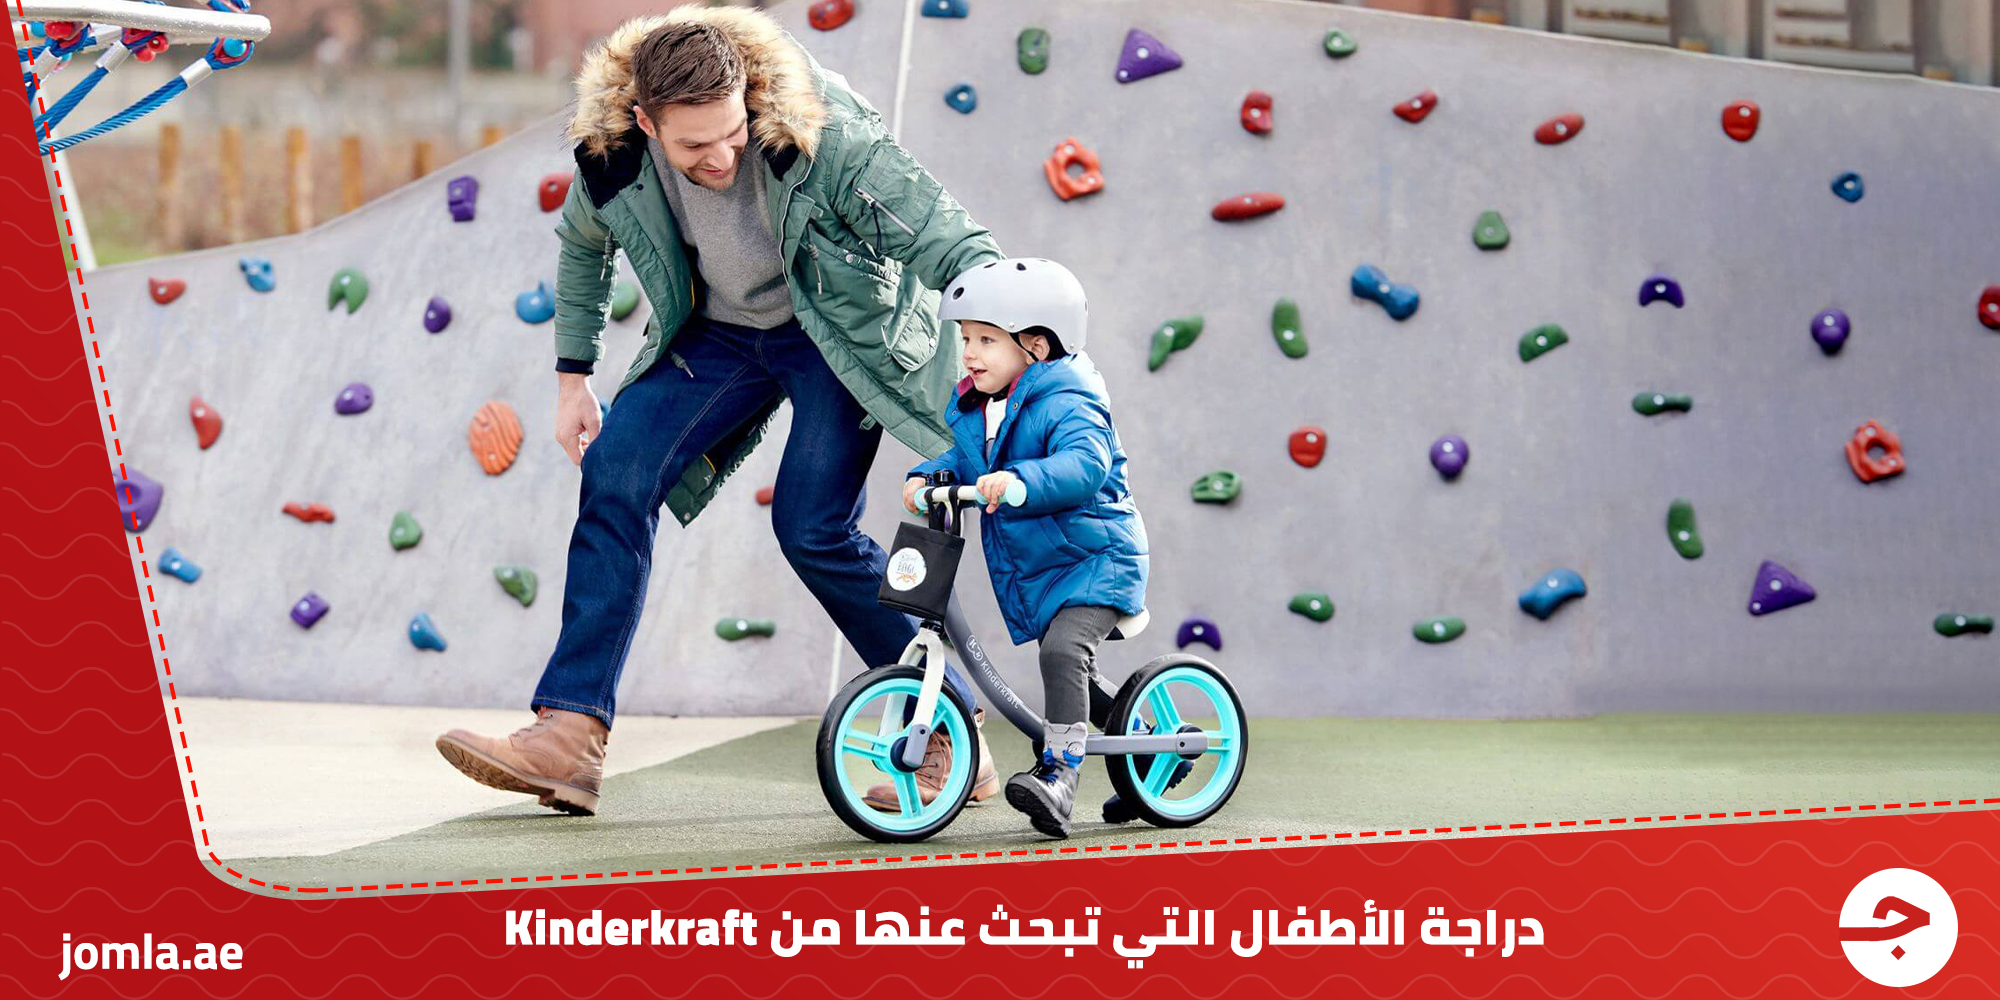 دراجة اطفال التي تبحث عنها: مجموعة من أفضل دراجات اطفال من kinderkraft